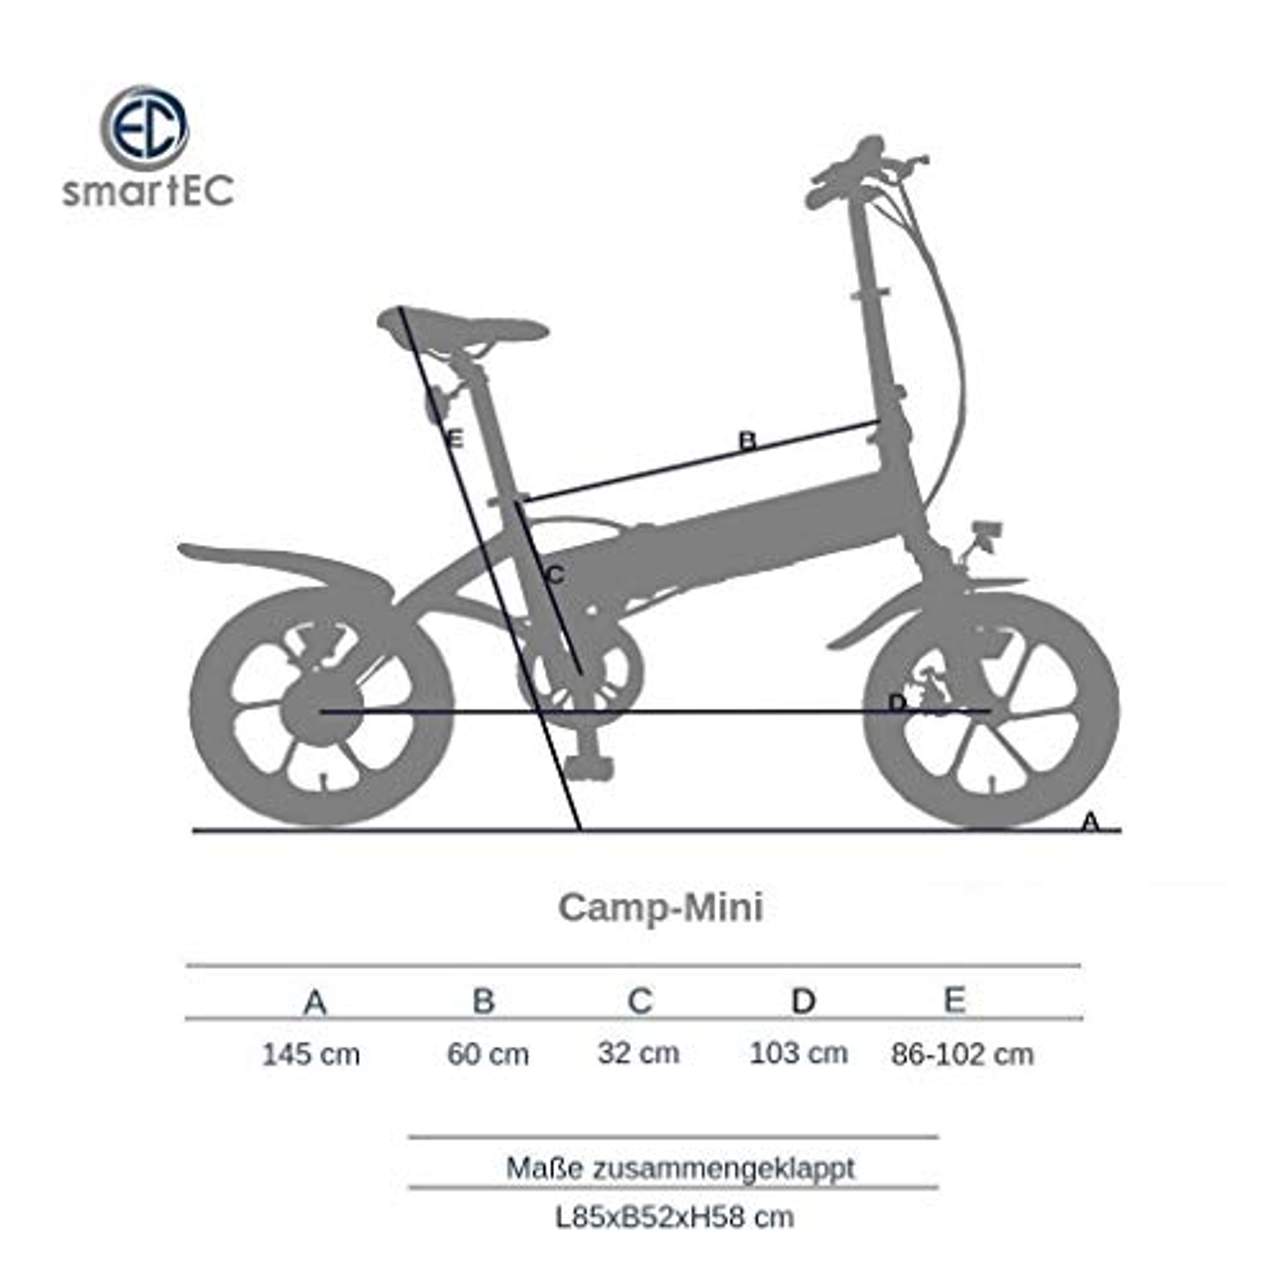 smartEC Camp-Mini Klapprad Mini E-Bike